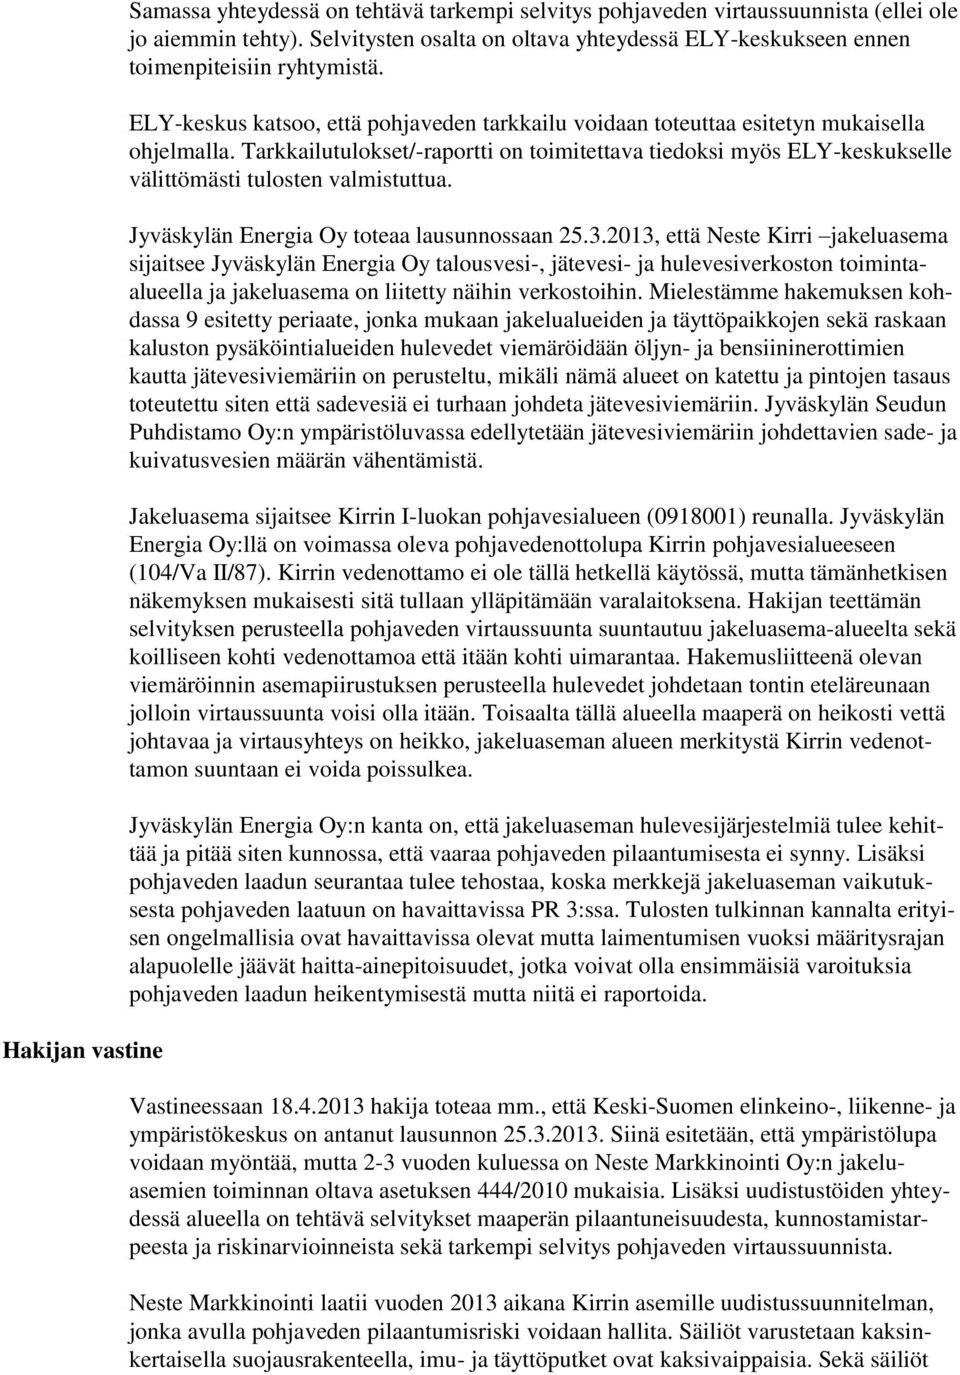 Tarkkailutulokset/-raportti on toimitettava tiedoksi myös ELY-keskukselle välittömästi tulosten valmistuttua. Jyväskylän Energia Oy toteaa lausunnossaan 25.3.